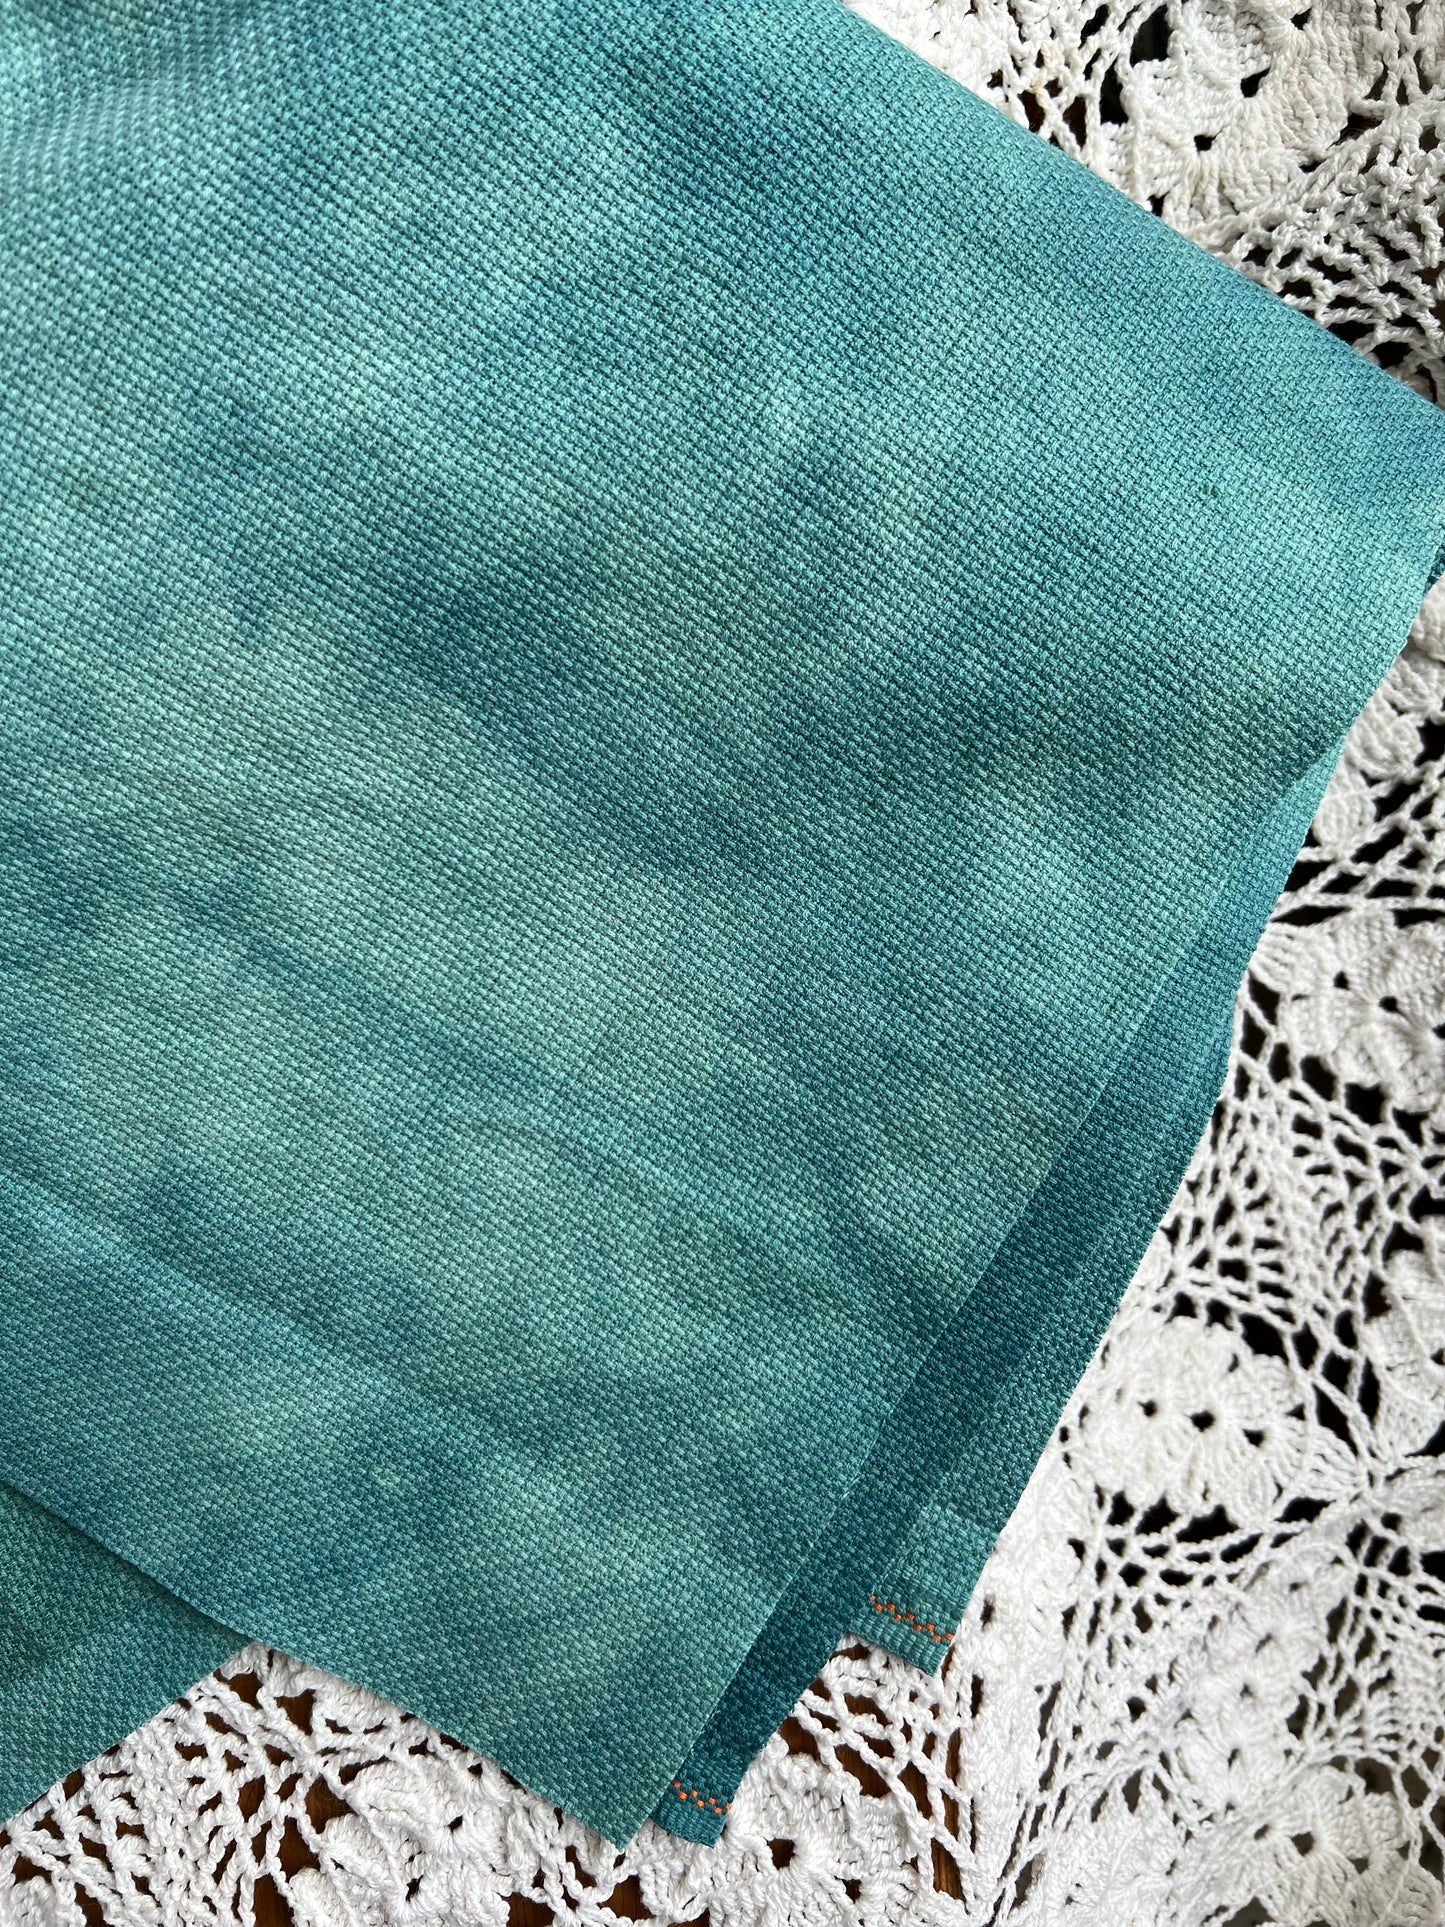 New Fabric Colour in Aida - Juniper